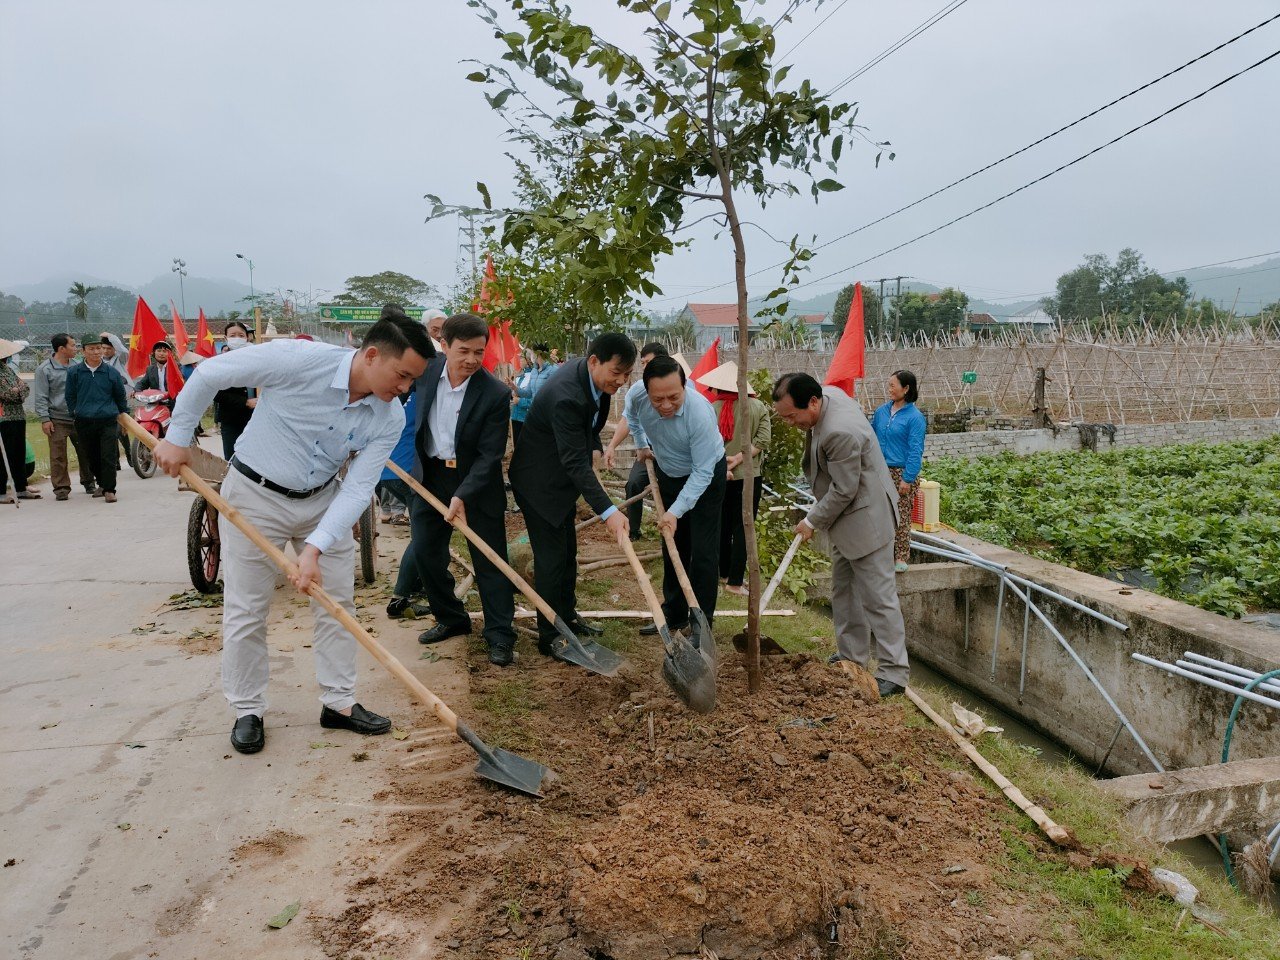 Hội nông dân Quỳnh Văn với Phong trào vận động hội viên ủng hộ trồng “Hàng cây Nông dân ơn Bác” giai đoạn 2018-2022